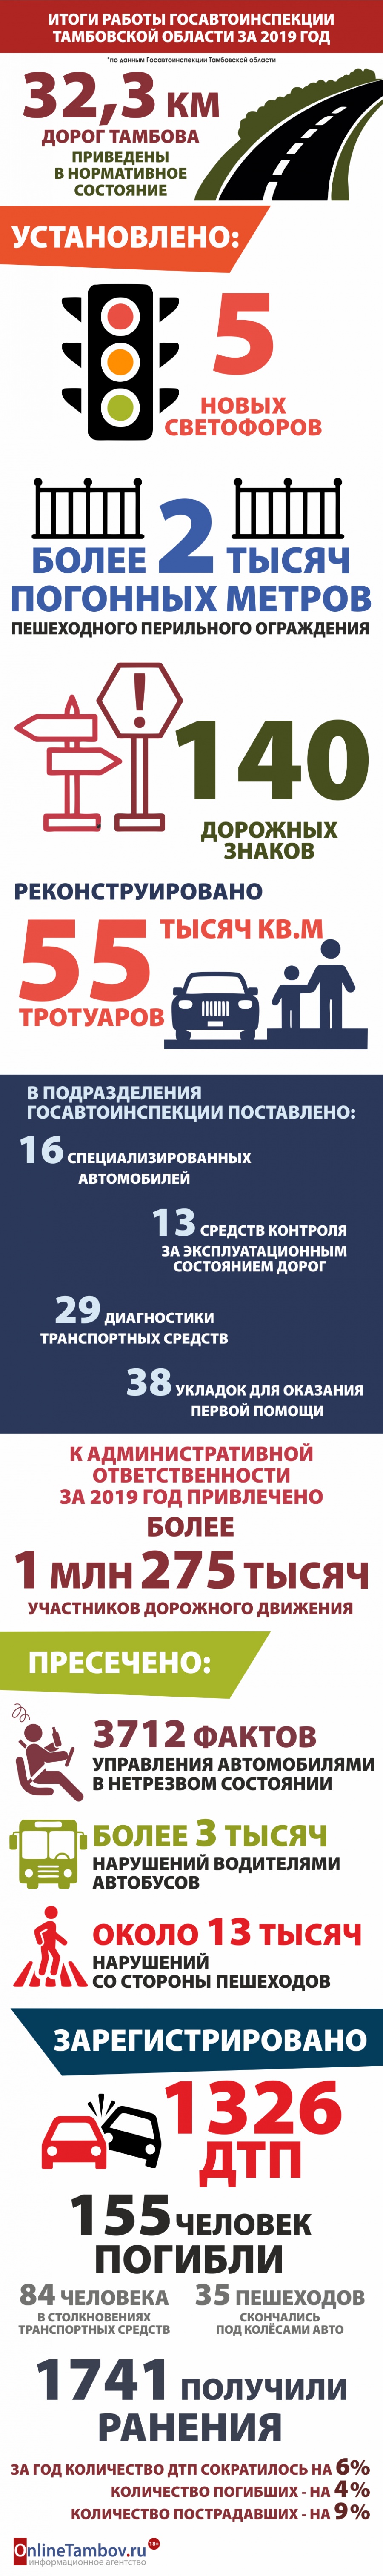 Итоги работы Госавтоинспекции Тамбовской области за 2019 год